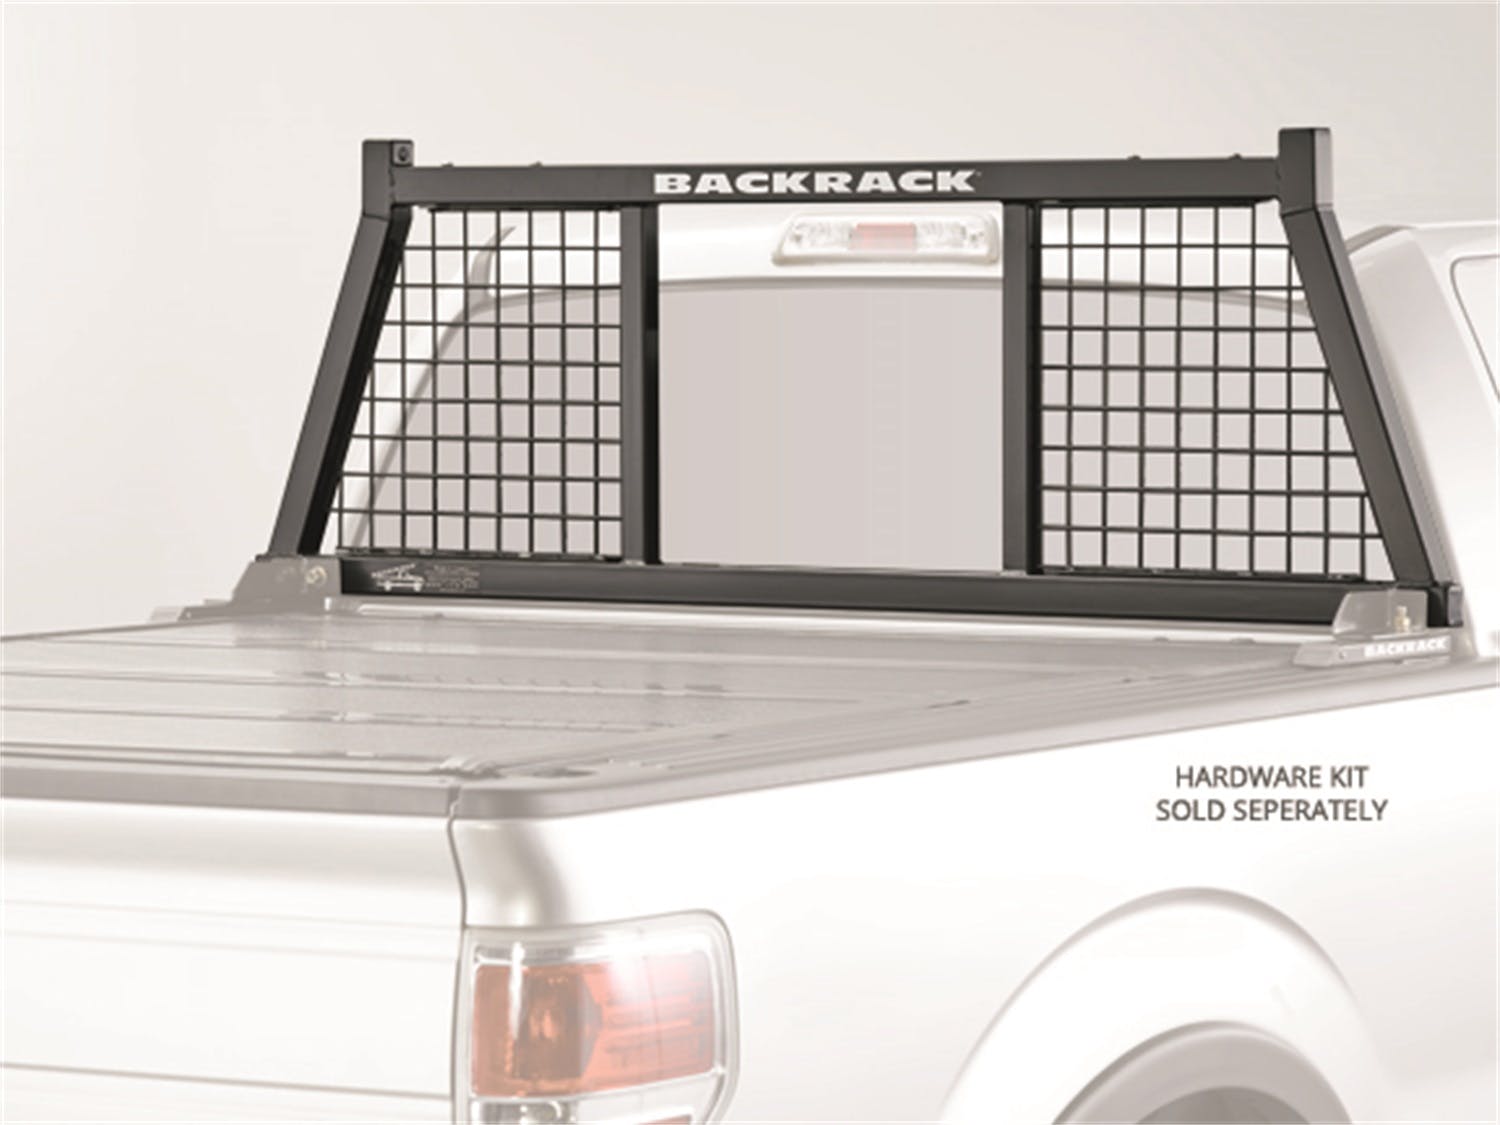 BACKRACK 147SM Frame Only, Hardware Kit Required - 30201, 30221